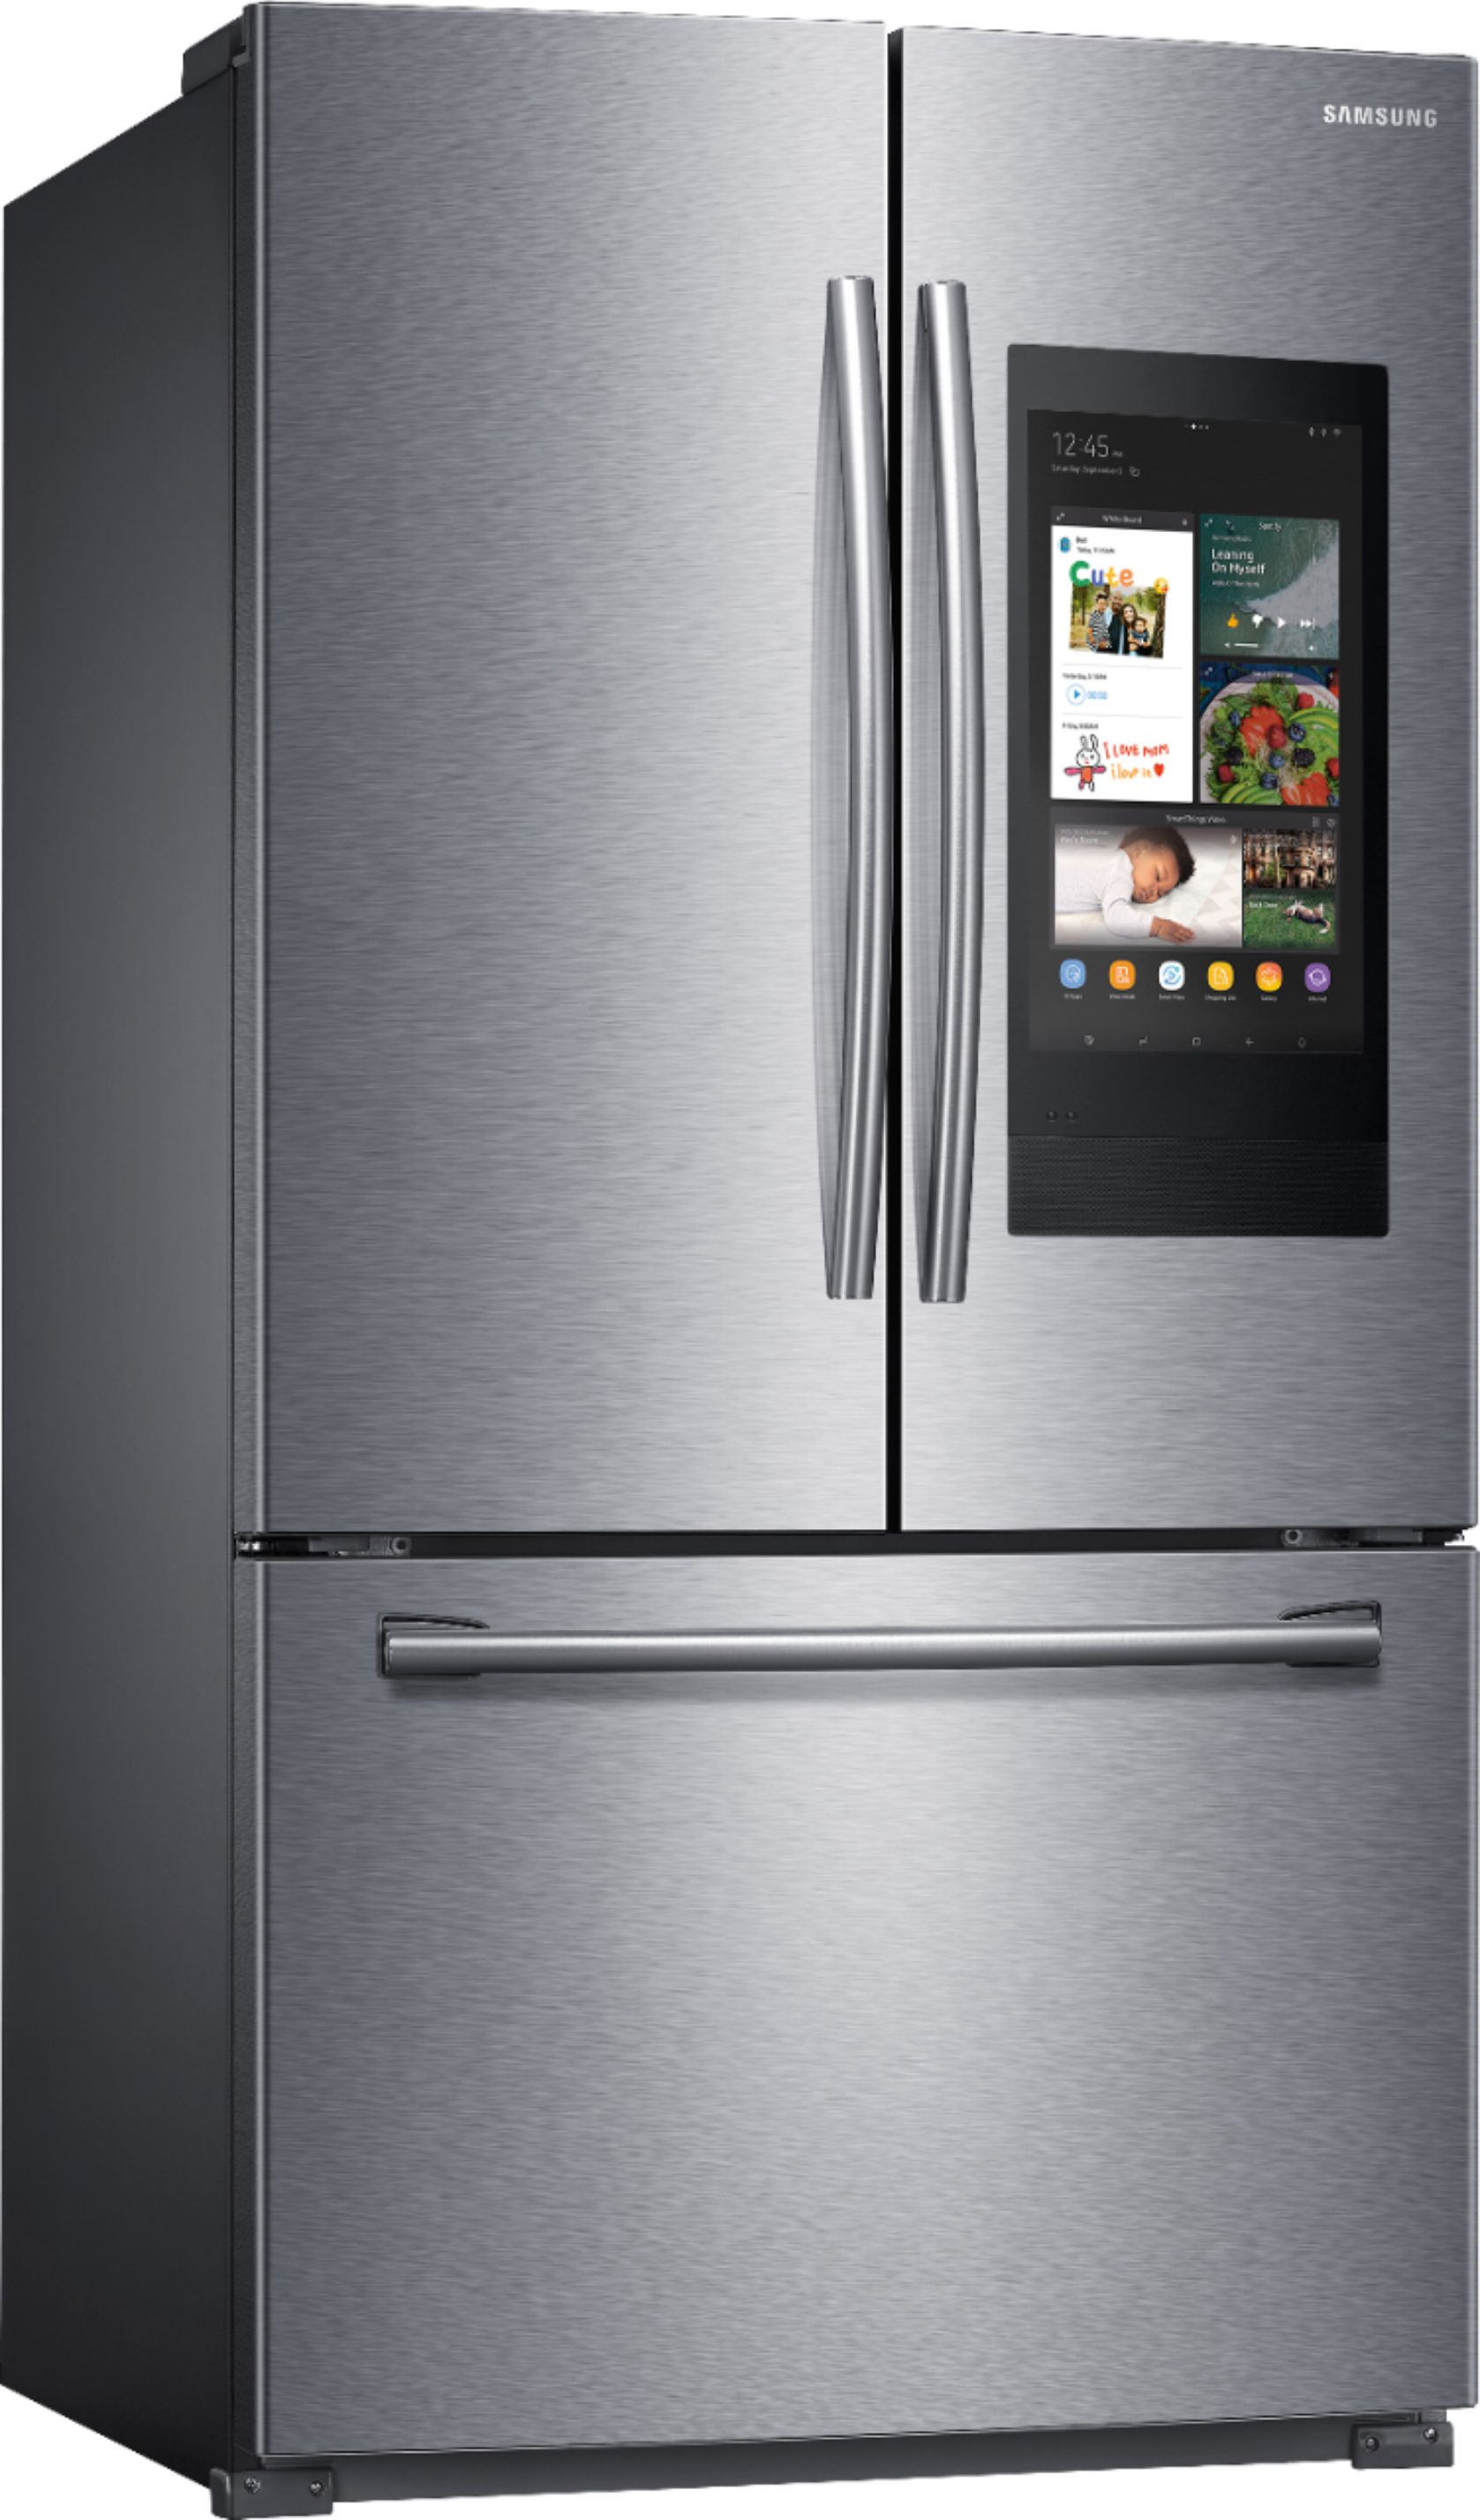 Angle View: Samsung - 22 cu. ft. Smart 3-Door French Door Refrigerator - Stainless steel